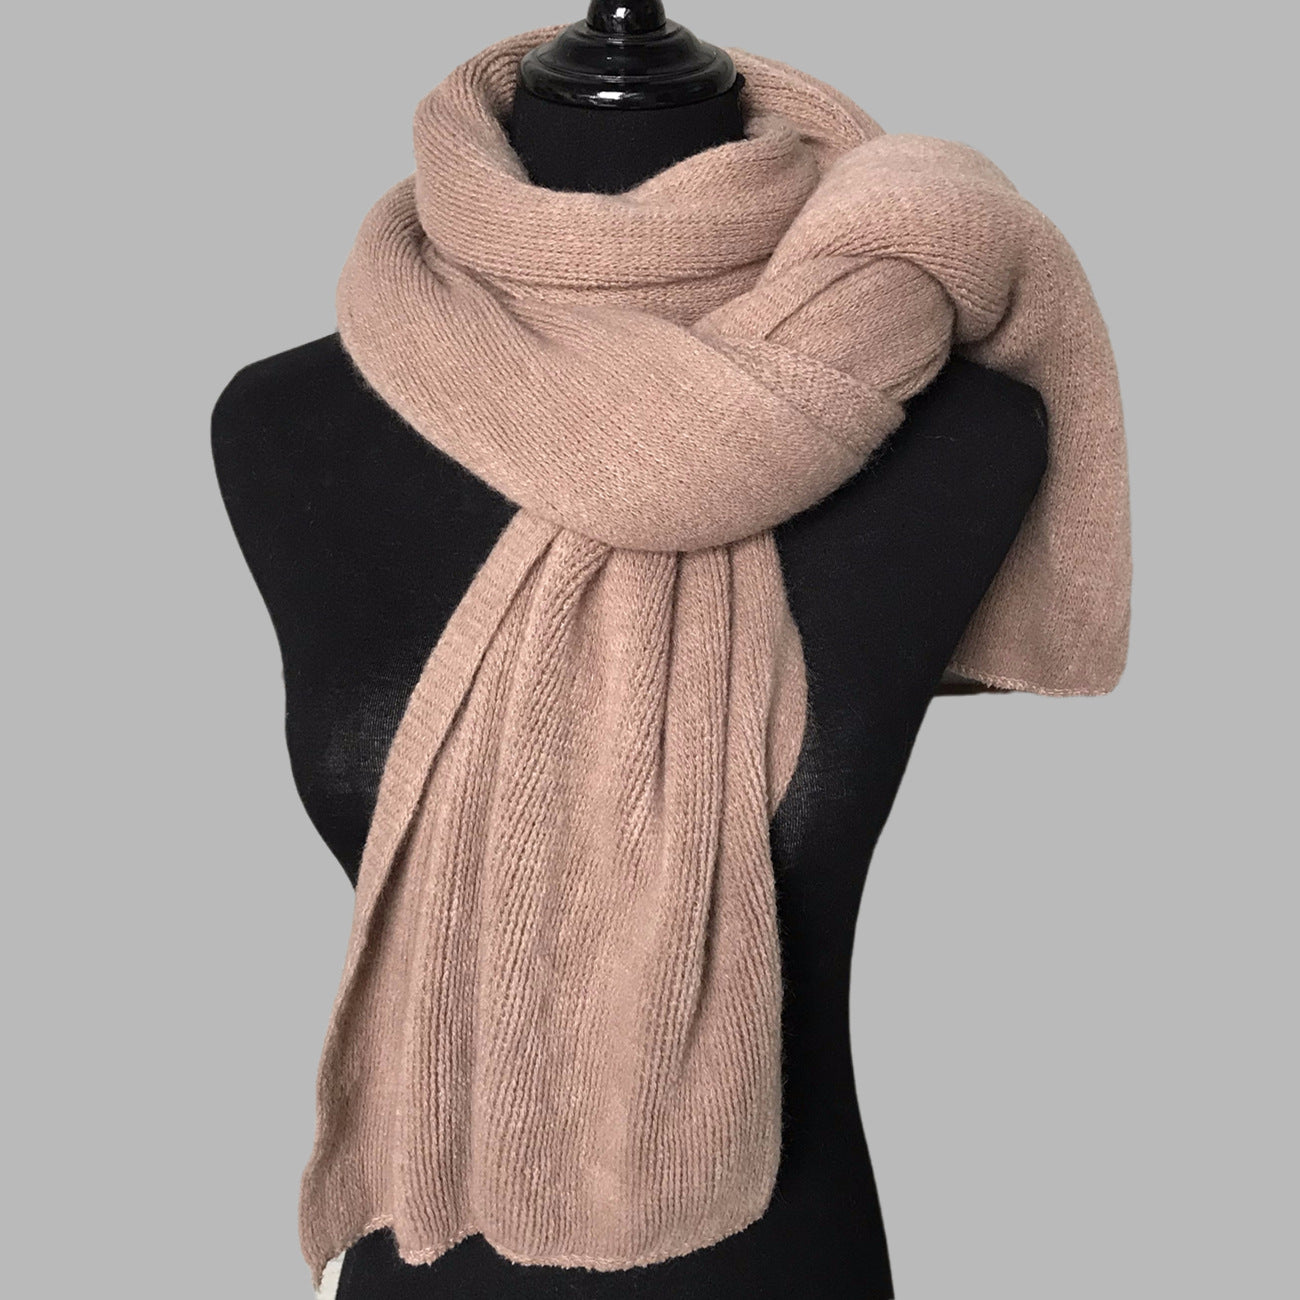 Damen-Schal, warm, für den Winter, einfarbig, Kaschmir